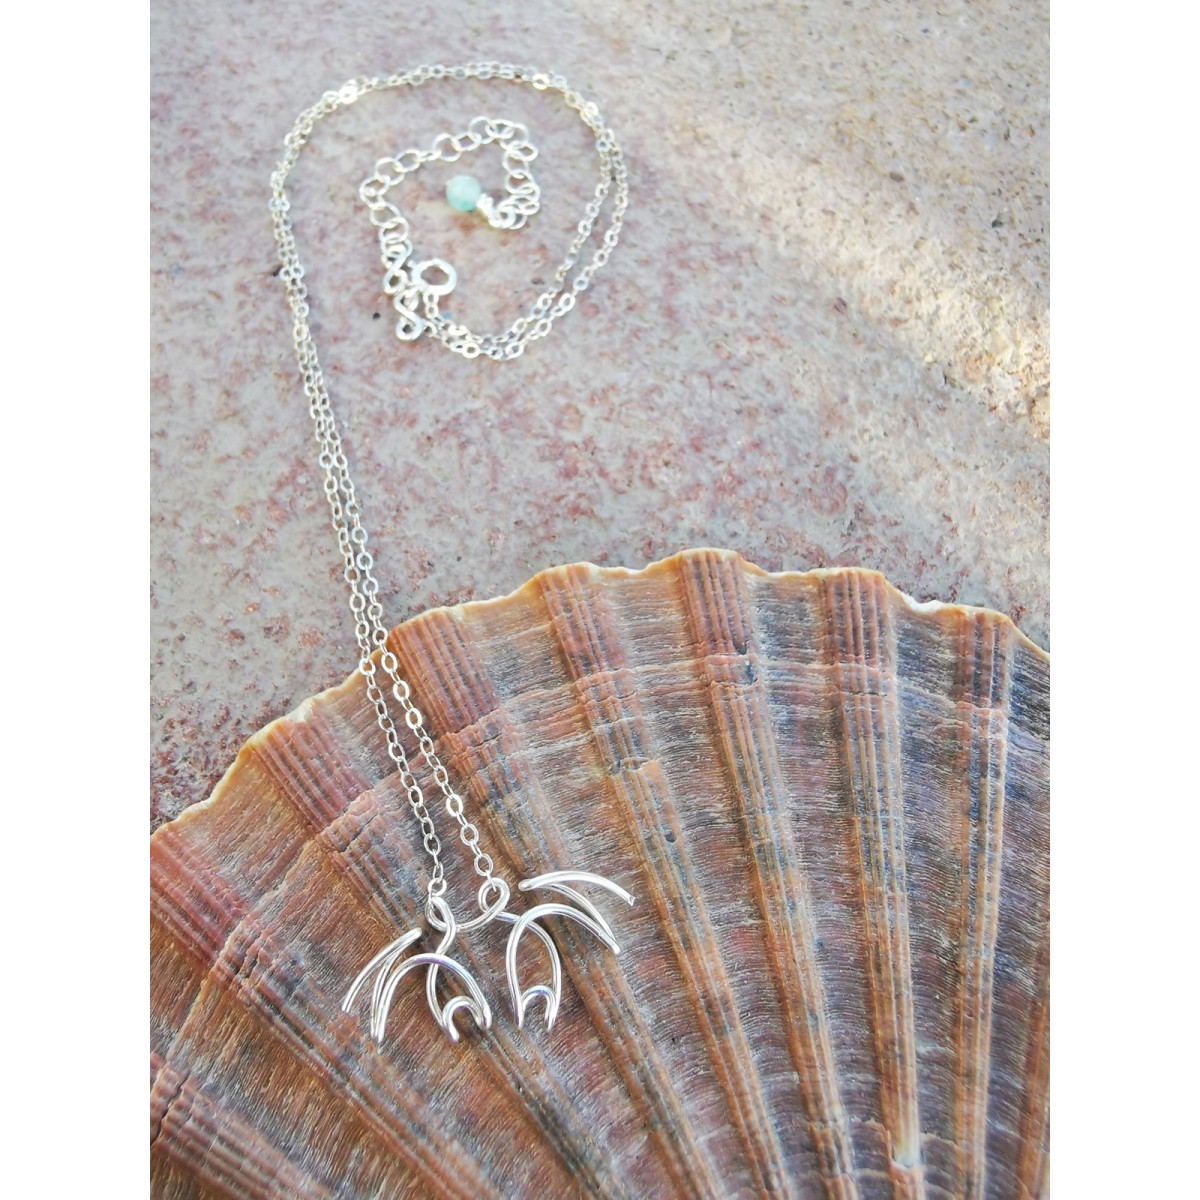 Halskette mit Krebs Anhänger, handmade, ocean jewelry, wire art - in Sterling Silber - KIZZU Schmuck 